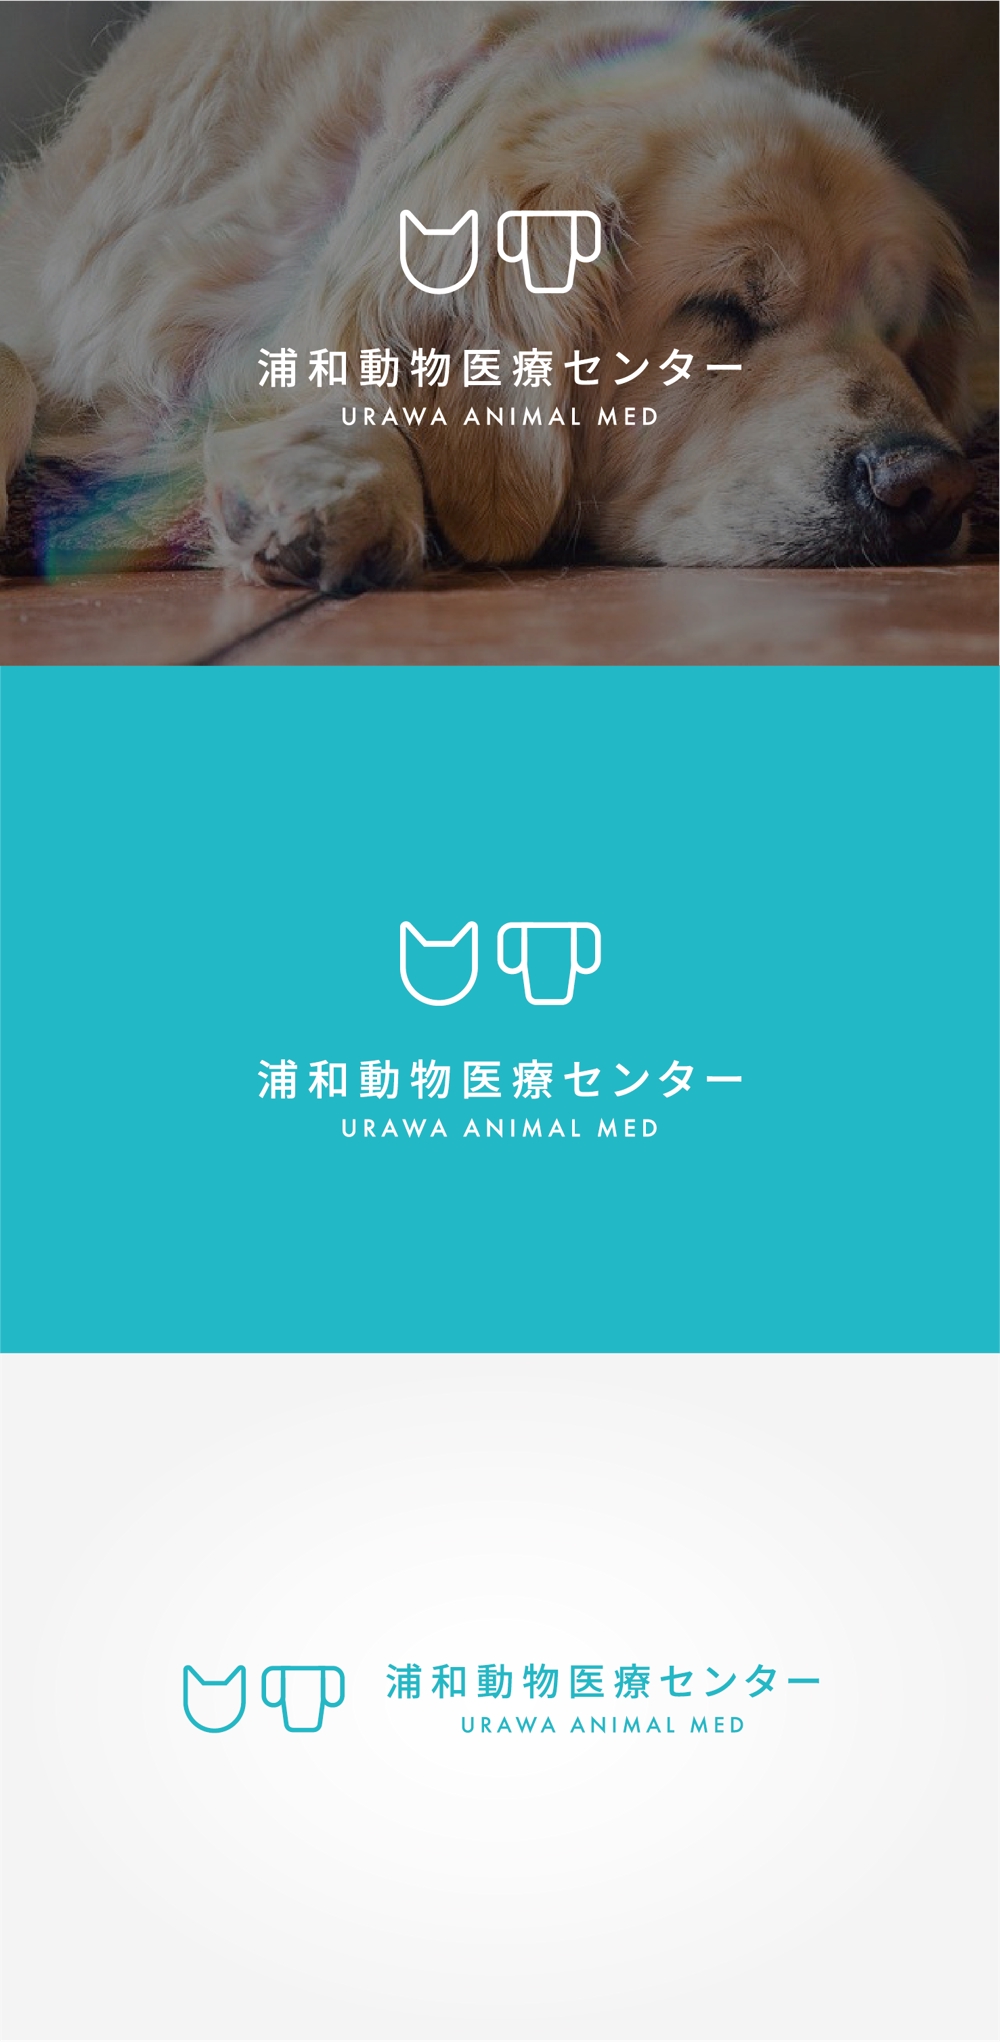 新規開業動物病院「浦和動物医療センター」のロゴ